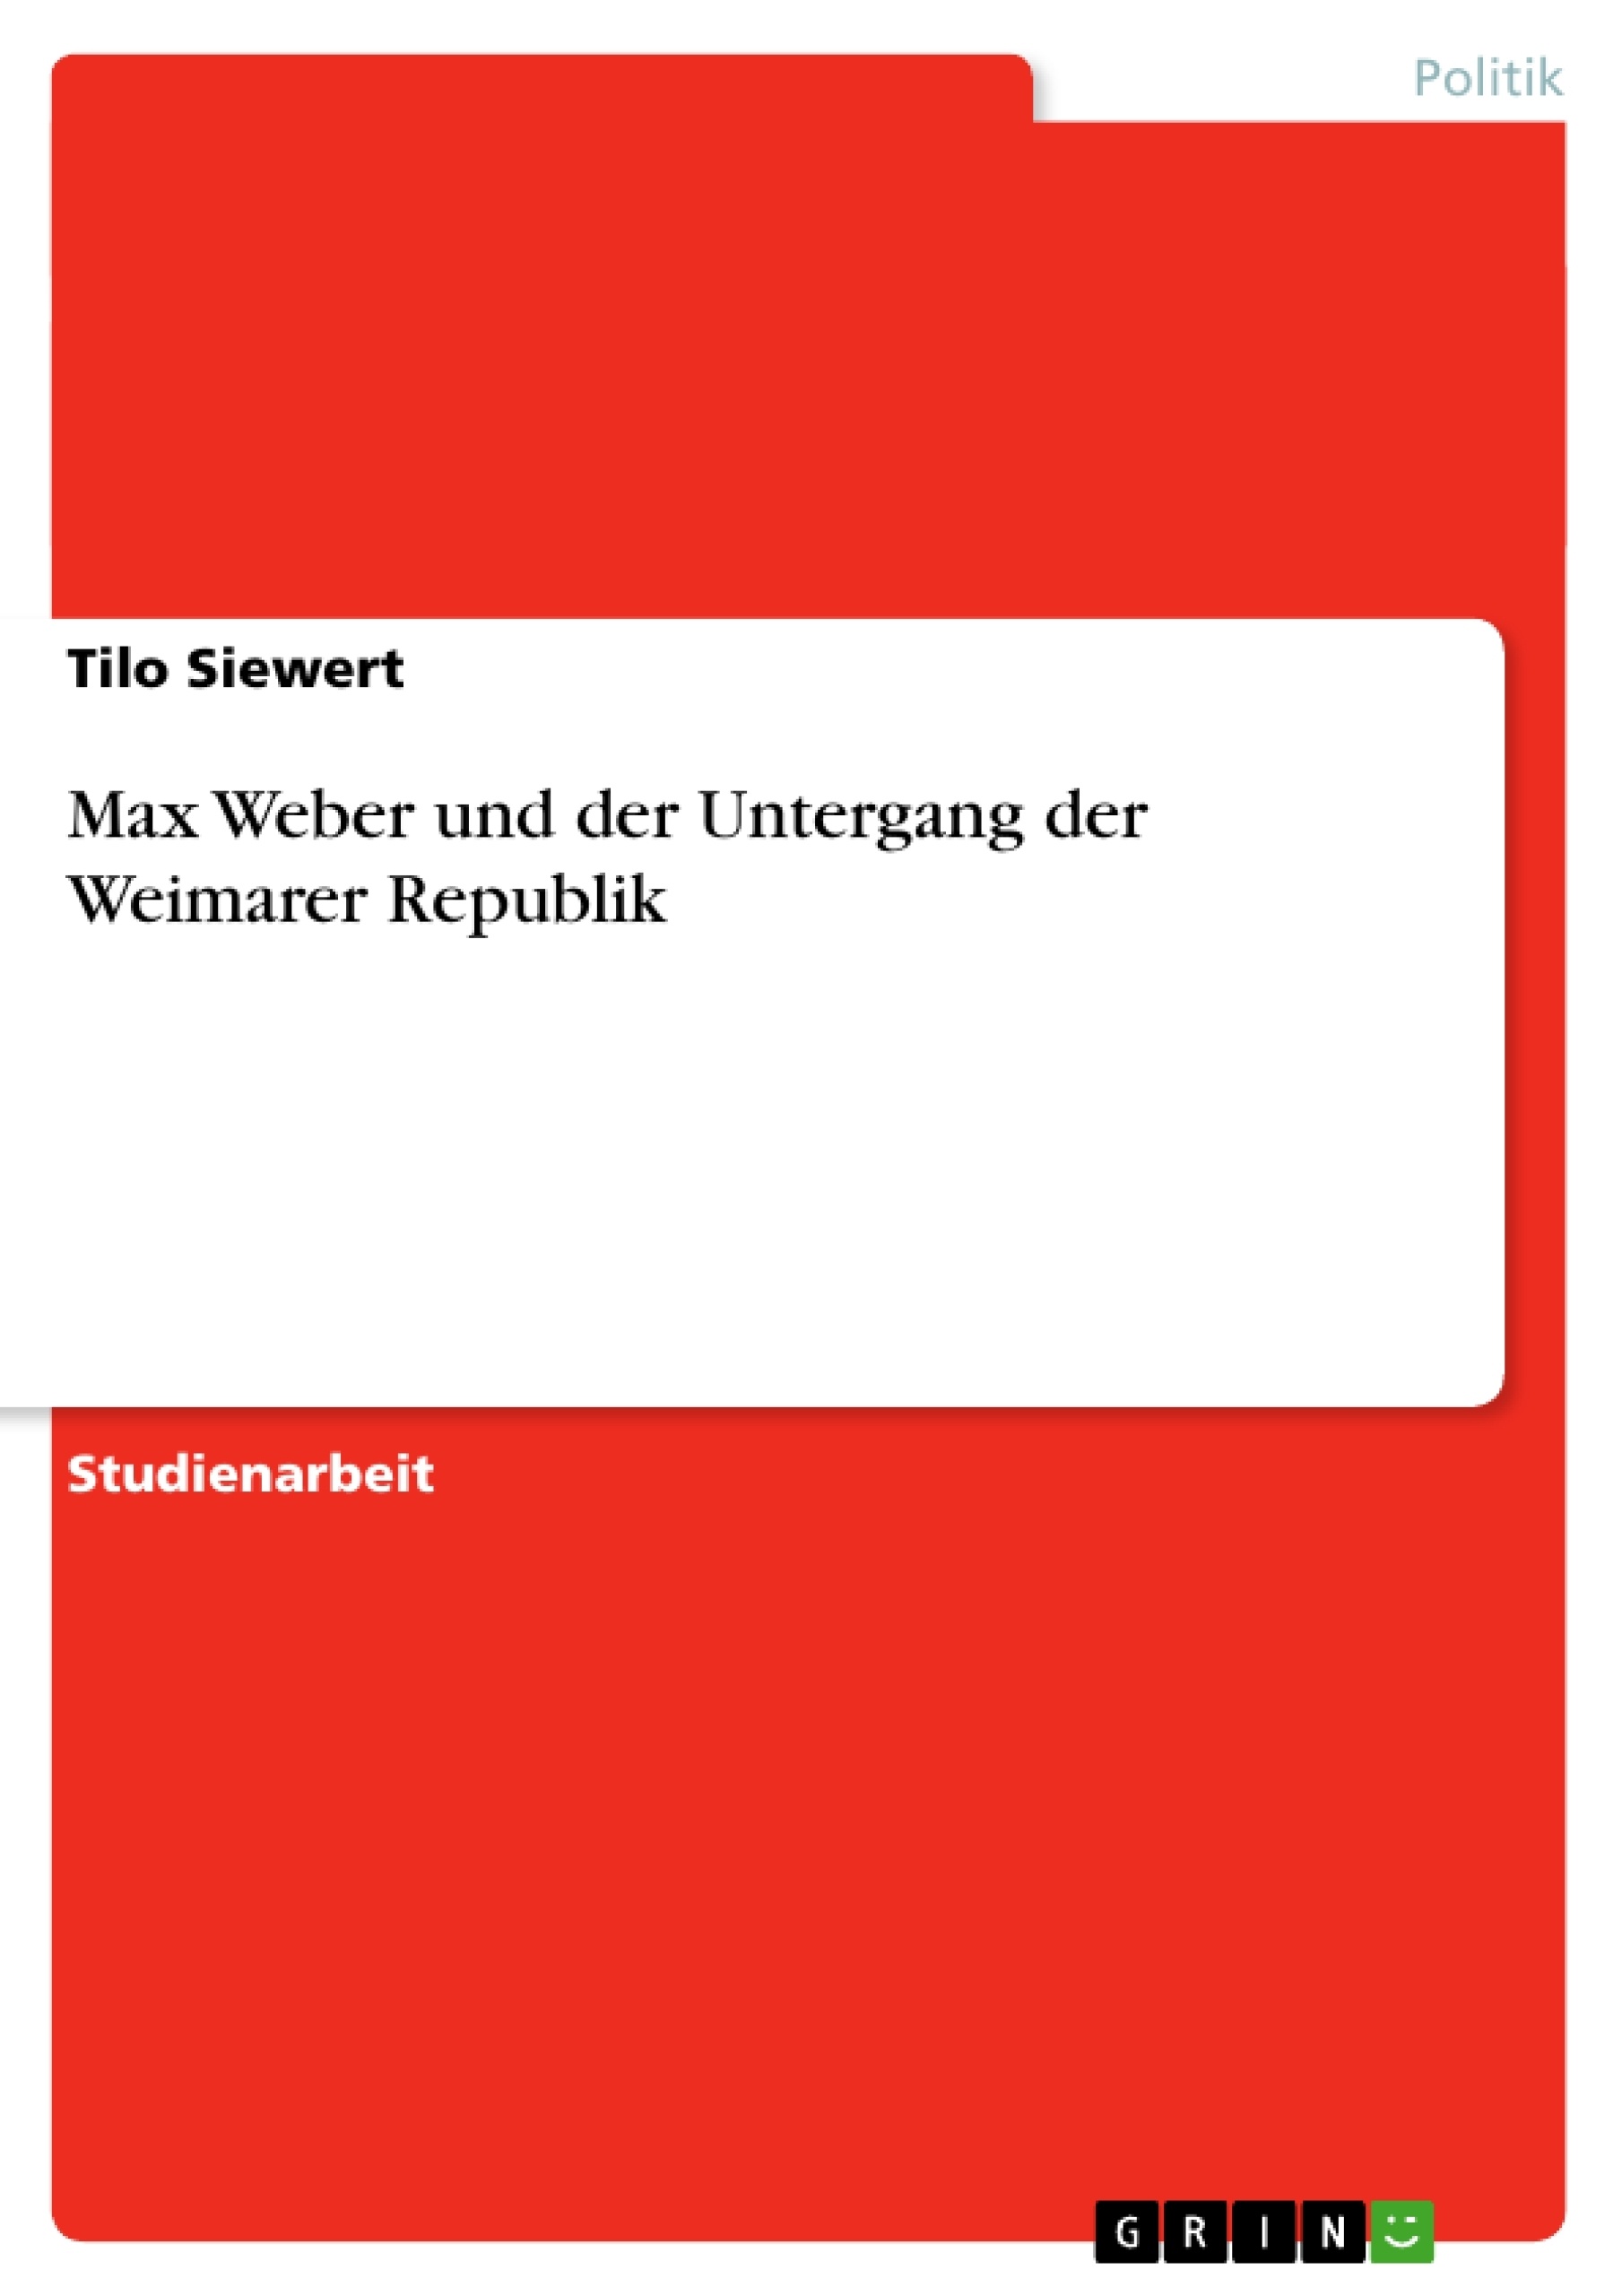 Titel: Max Weber und der Untergang der Weimarer Republik